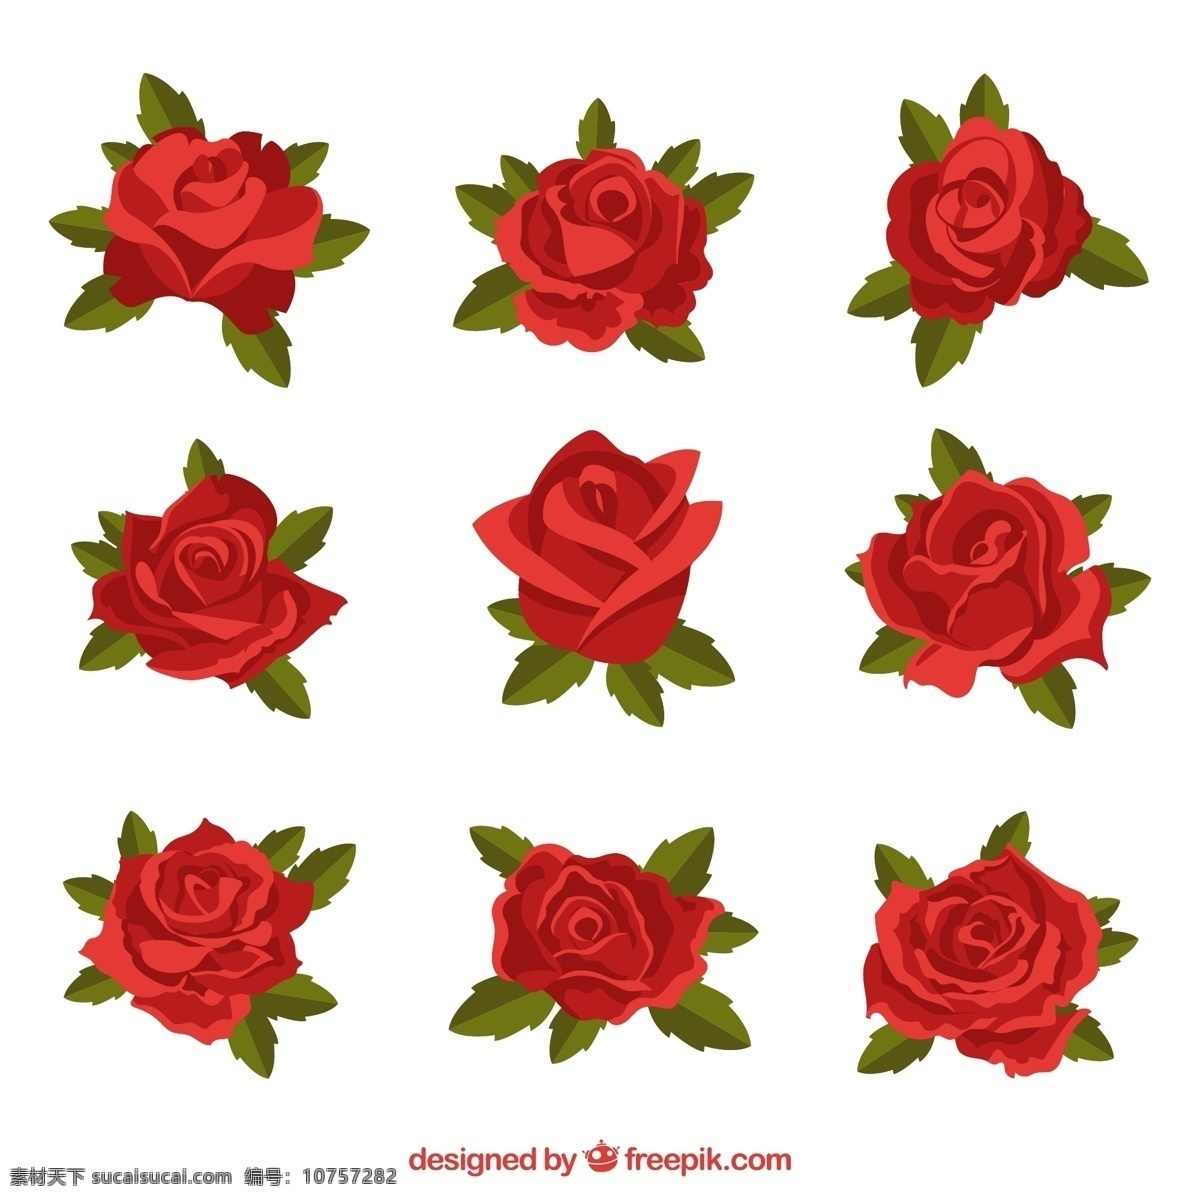 带 叶 玫瑰花 矢量 红玫瑰 玫瑰叶子 花卉 矢量图 格式 高清图片